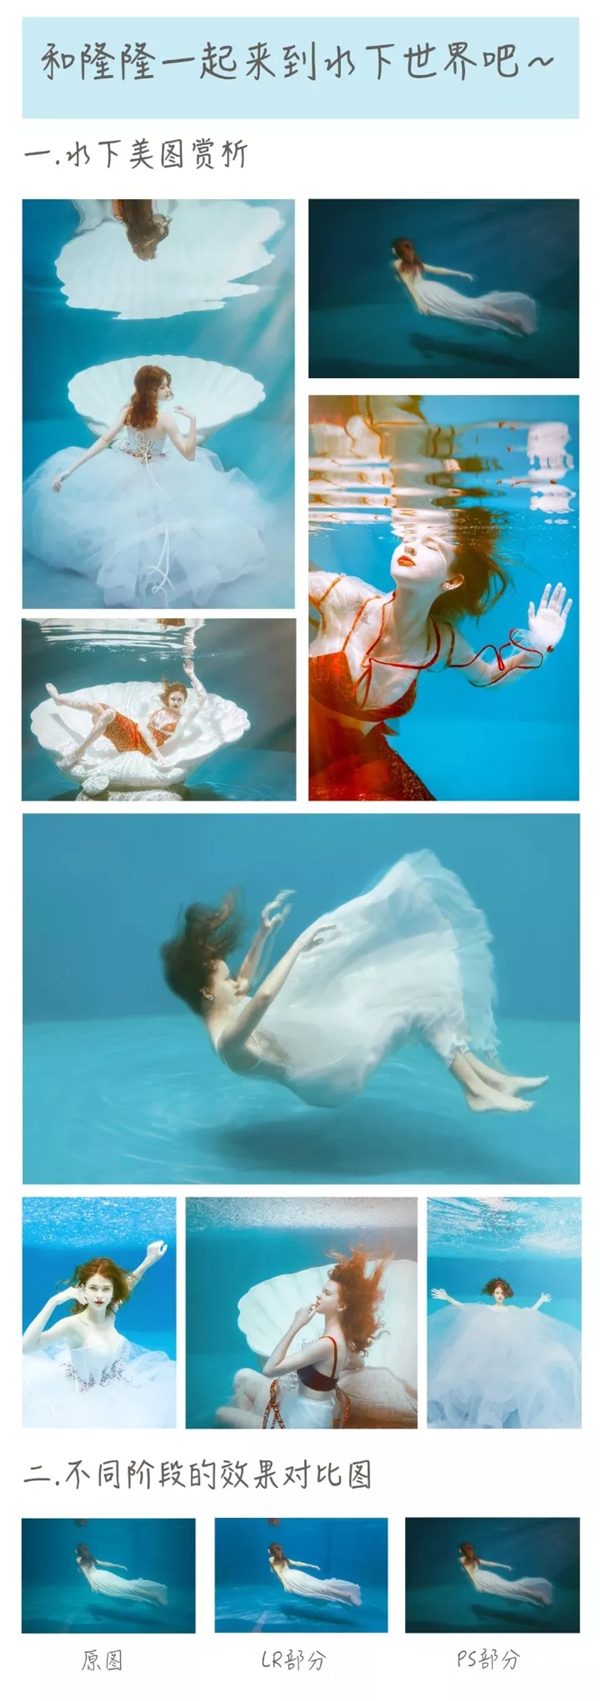 水下人像摄影拍摄方法与后期思路分享